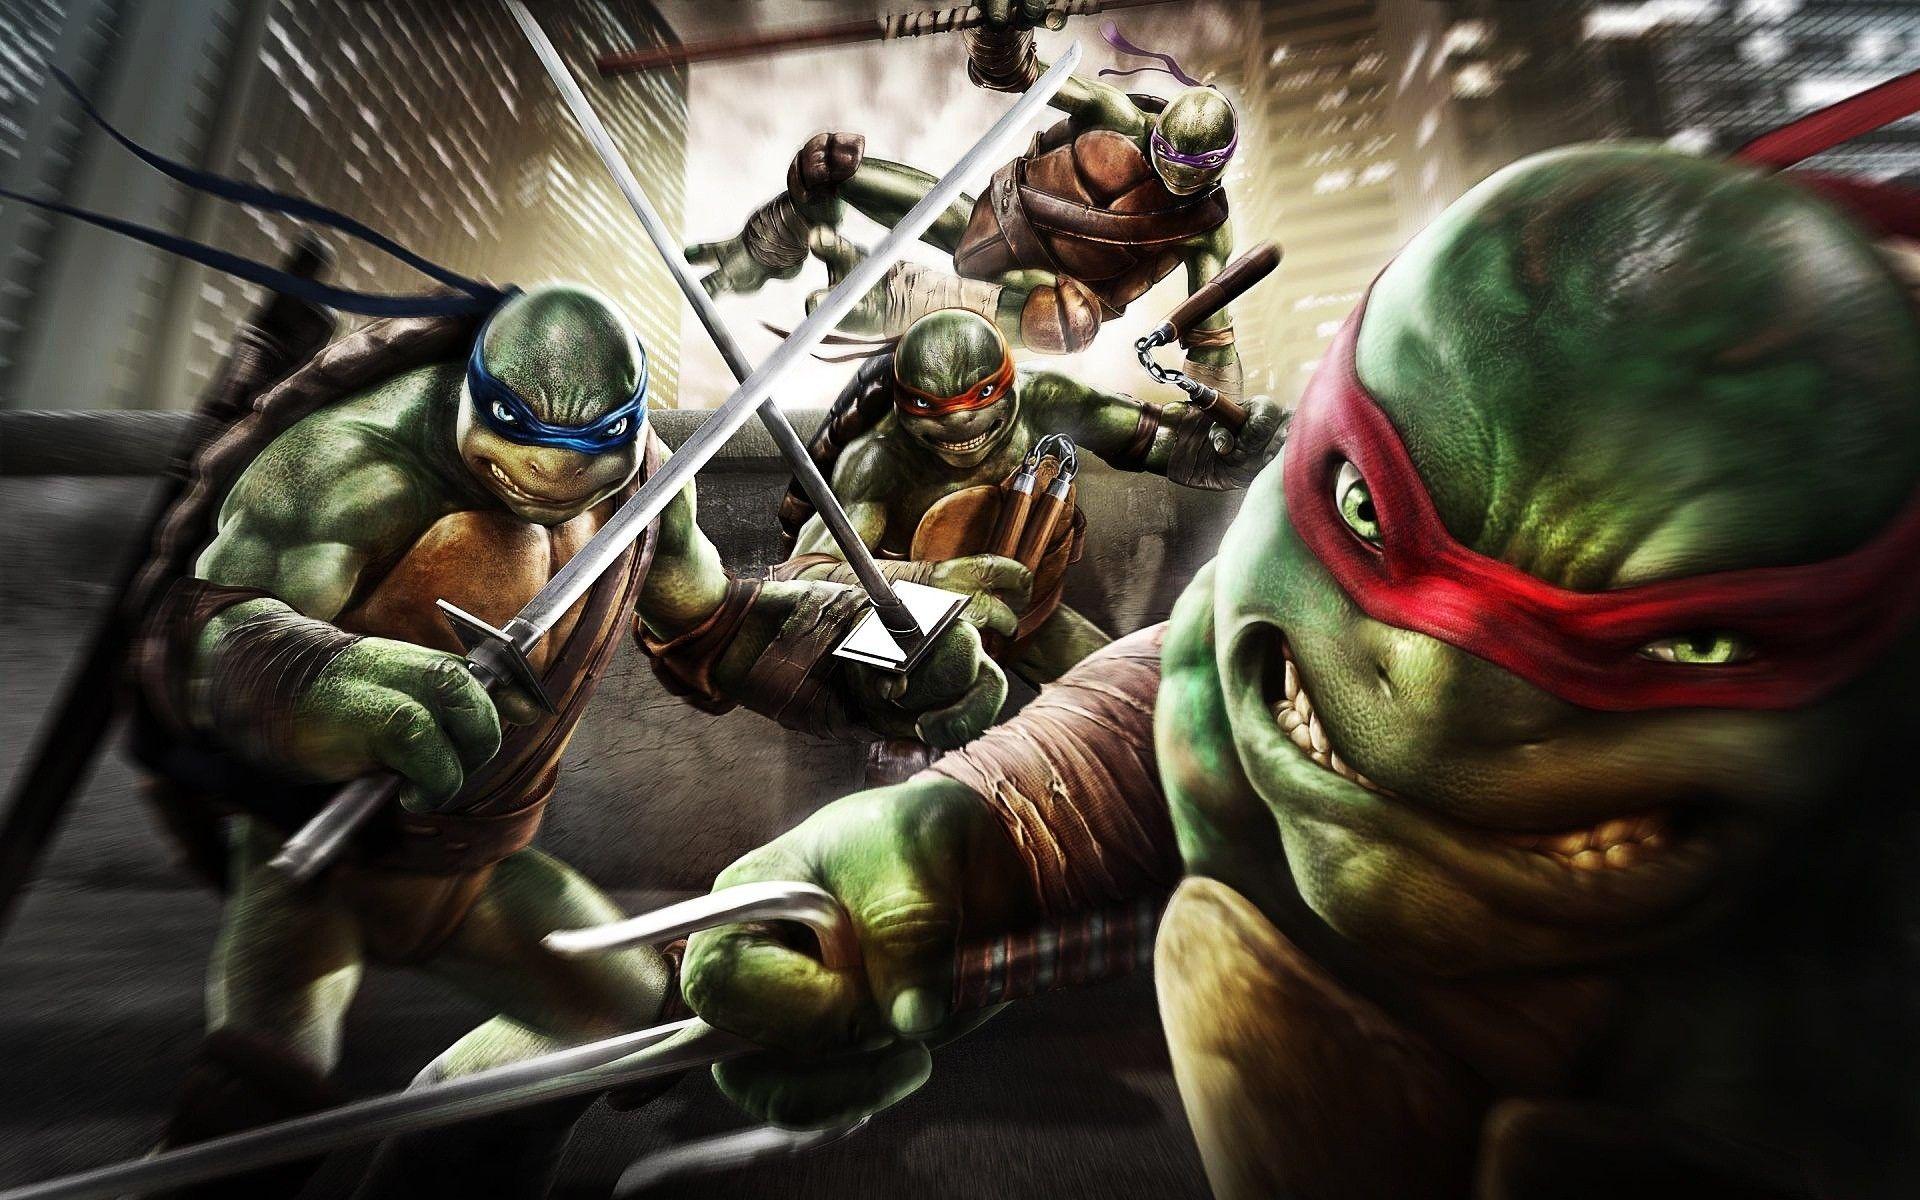 Những chiến binh rùa tuổi teen nổi tiếng đã quay trở lại với những hành động hấp dẫn trên các hình nền Teenage Mutant Ninja Turtles đầy màu sắc. Hình ảnh đáng yêu và đậm chất hoạt hình sẽ giúp bạn đắm chìm vào thế giới của những nhân vật quen thuộc này. Tải ngay những hình nền HD đẹp mắt để cùng tận hưởng những phút giây thư giãn nhé!